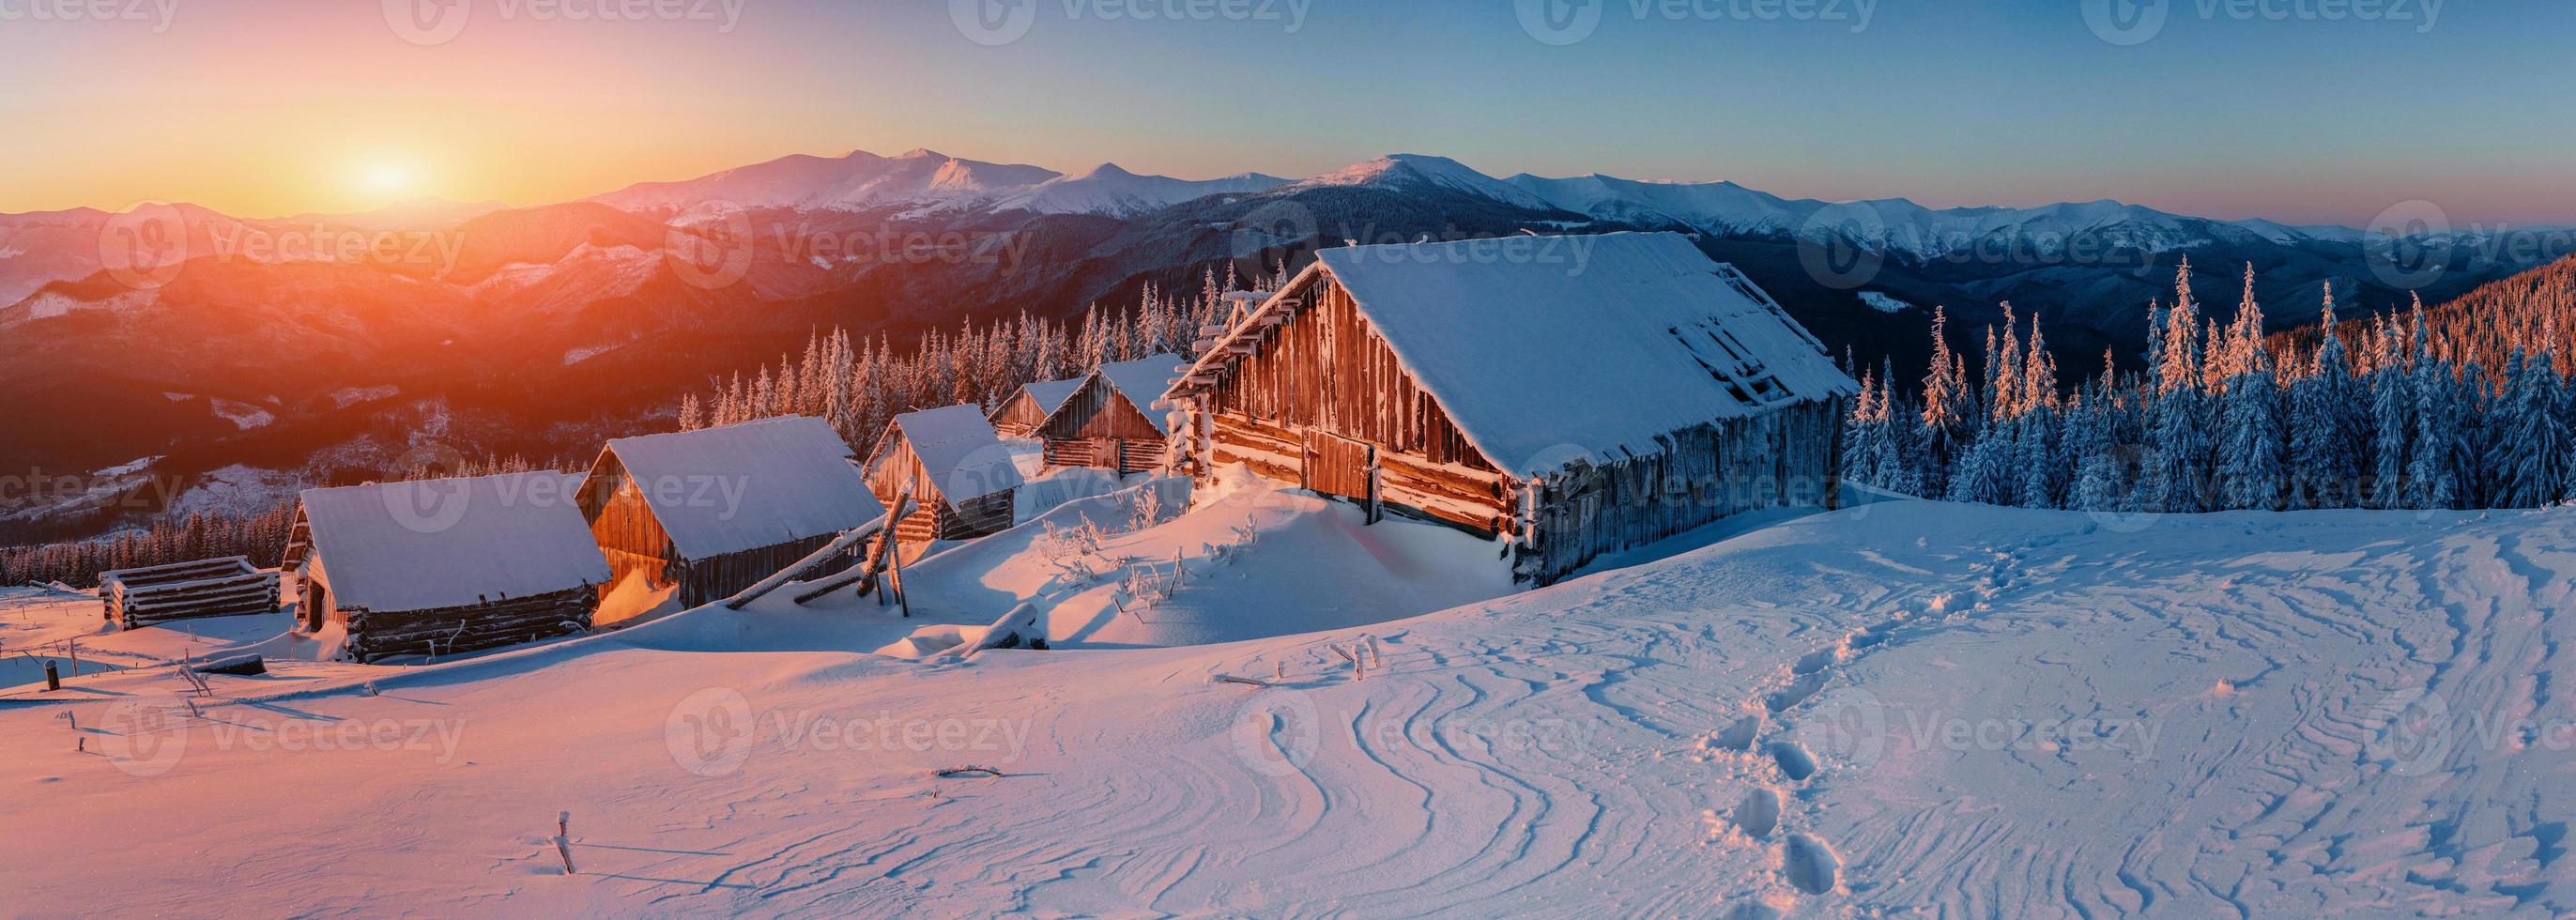 paysage d'hiver fantastique, les marches qui mènent à la cabane photo